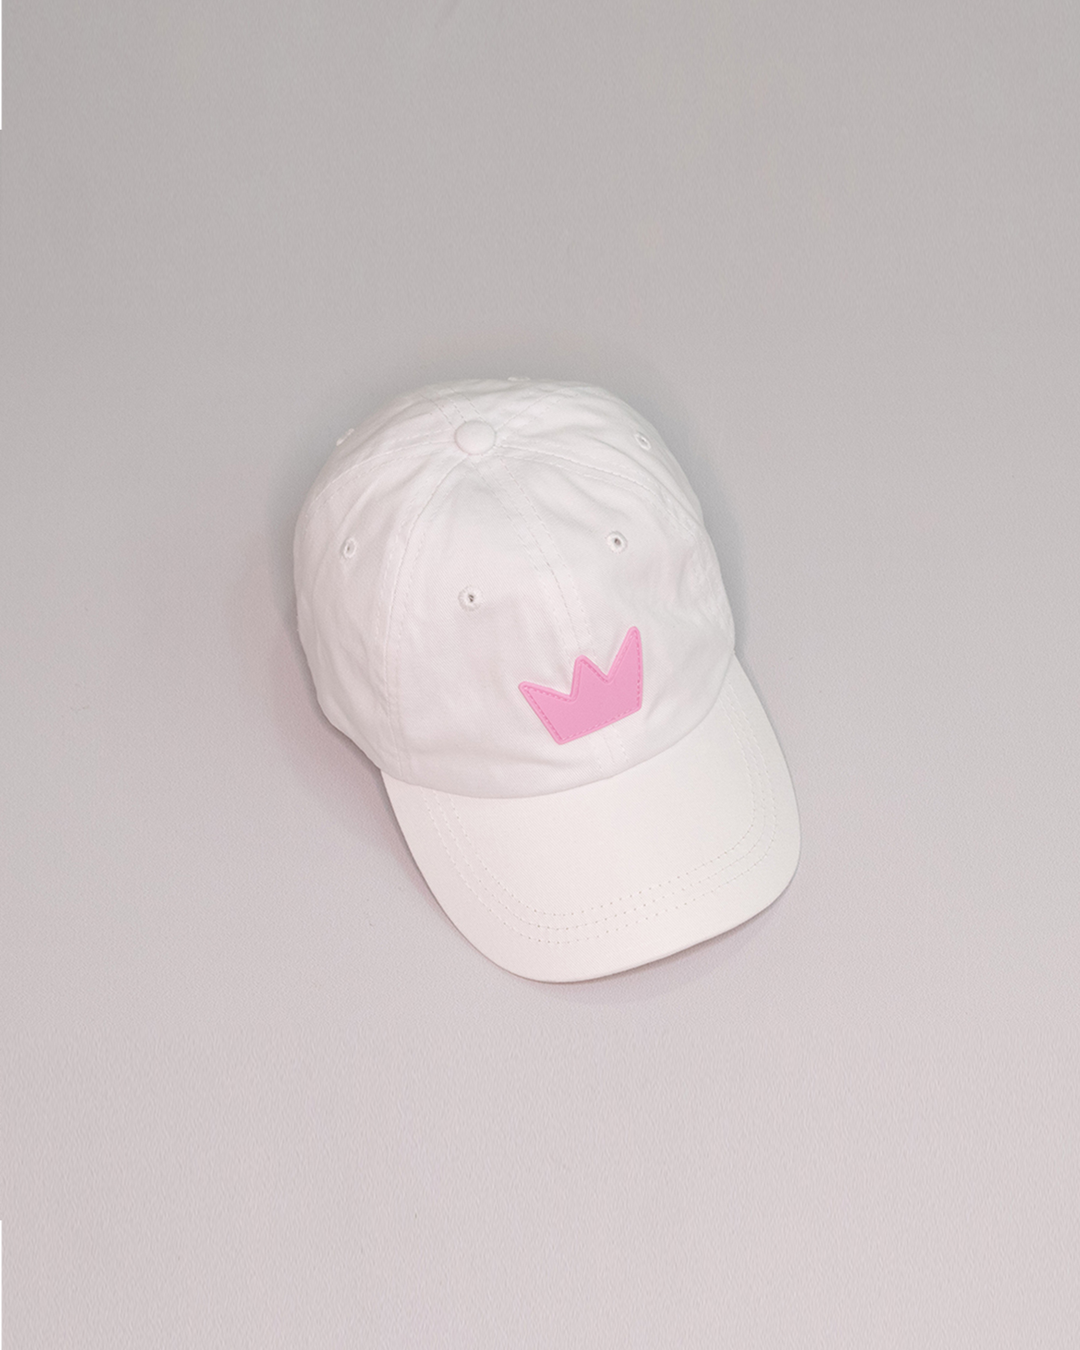 Gorra blanca con corona rosada